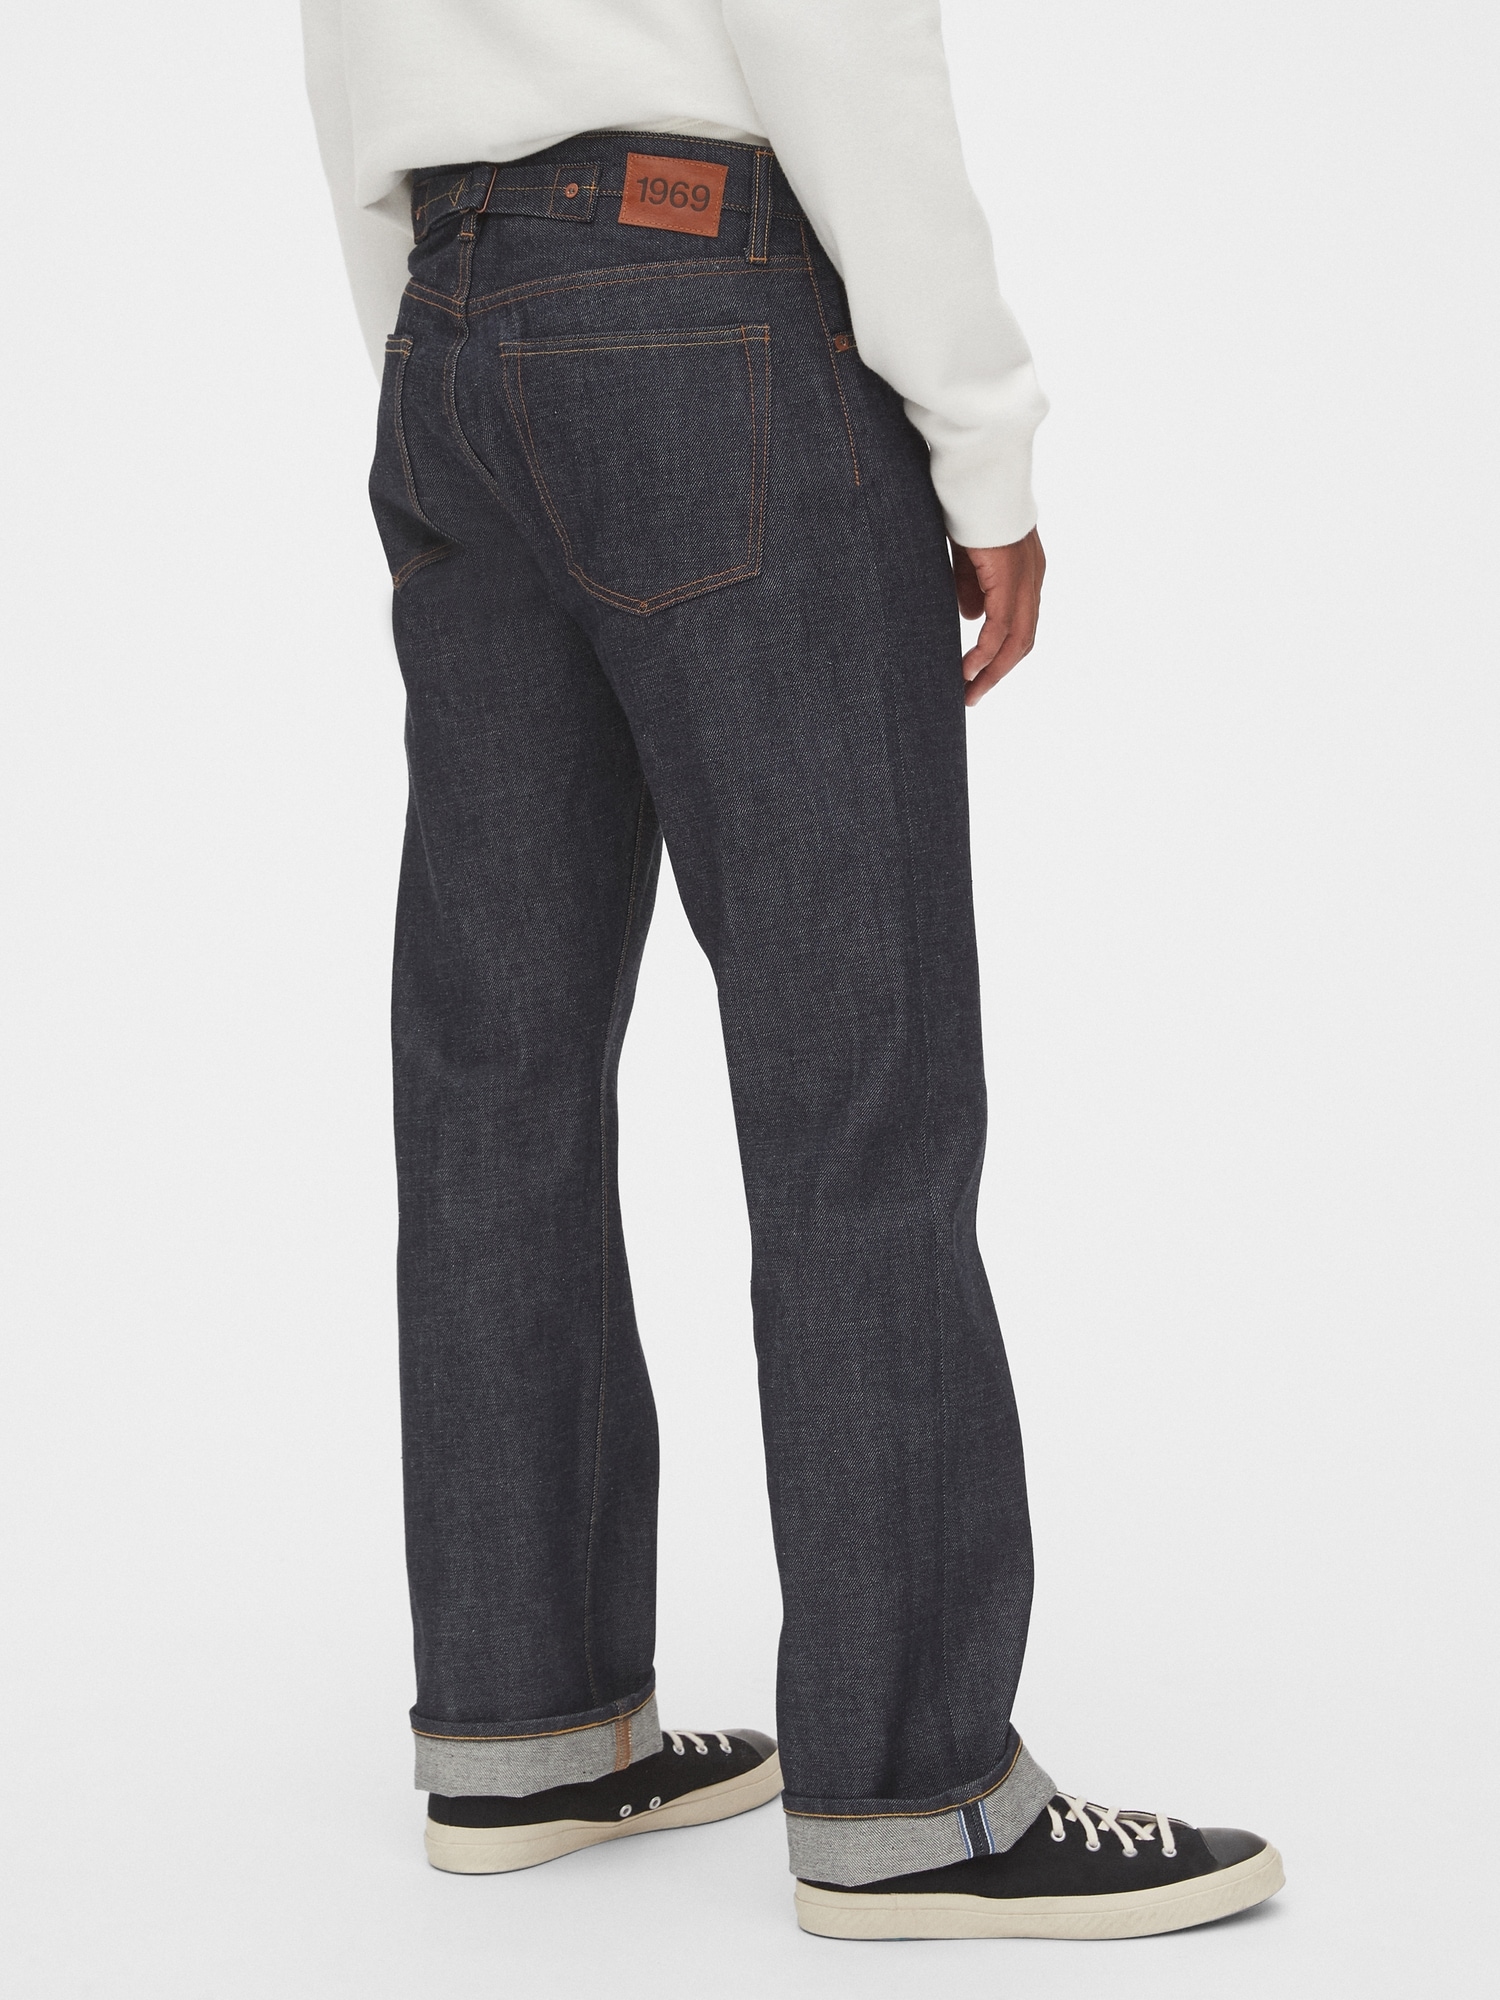 gap 1969 men's jeans loose fit